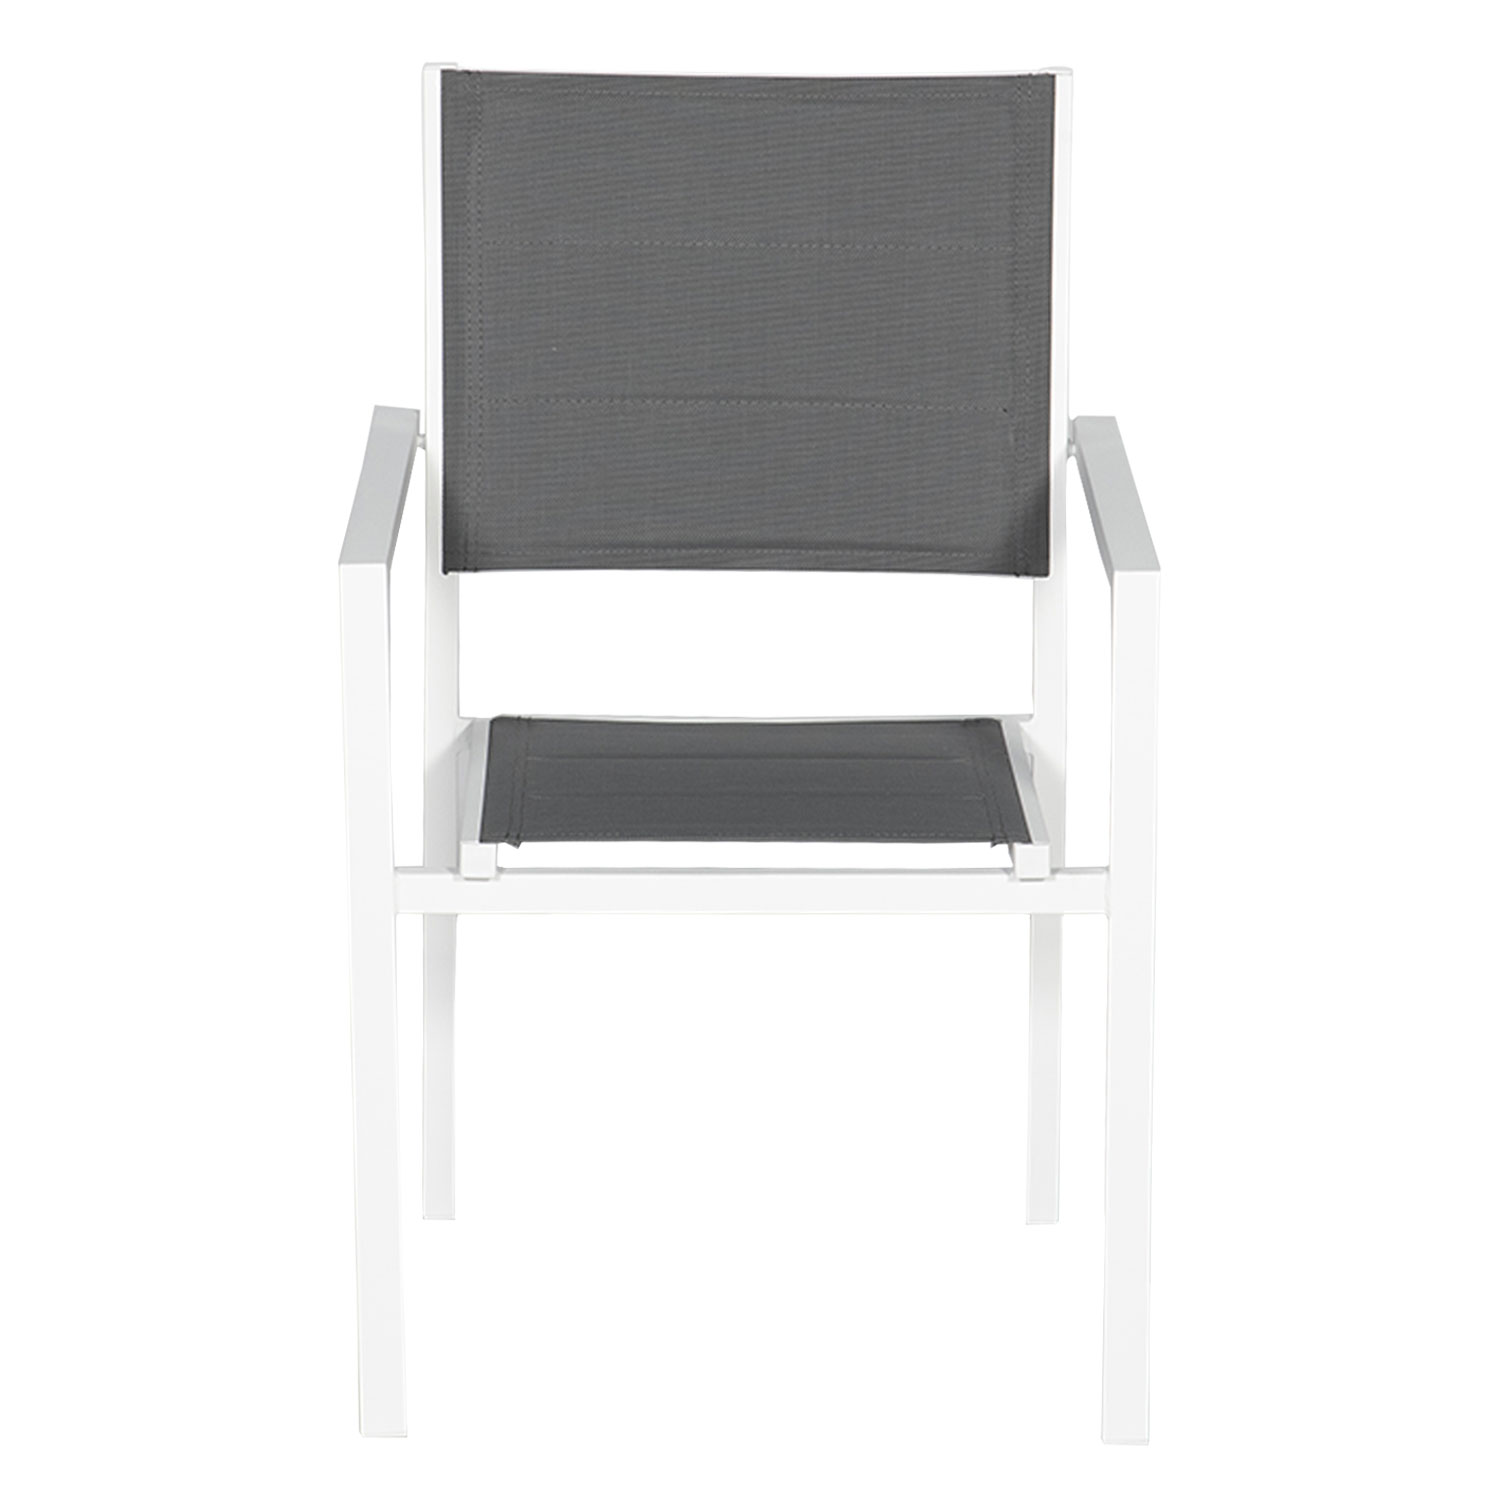 Set di 6 sedie imbottite in alluminio bianco - textilene grigio